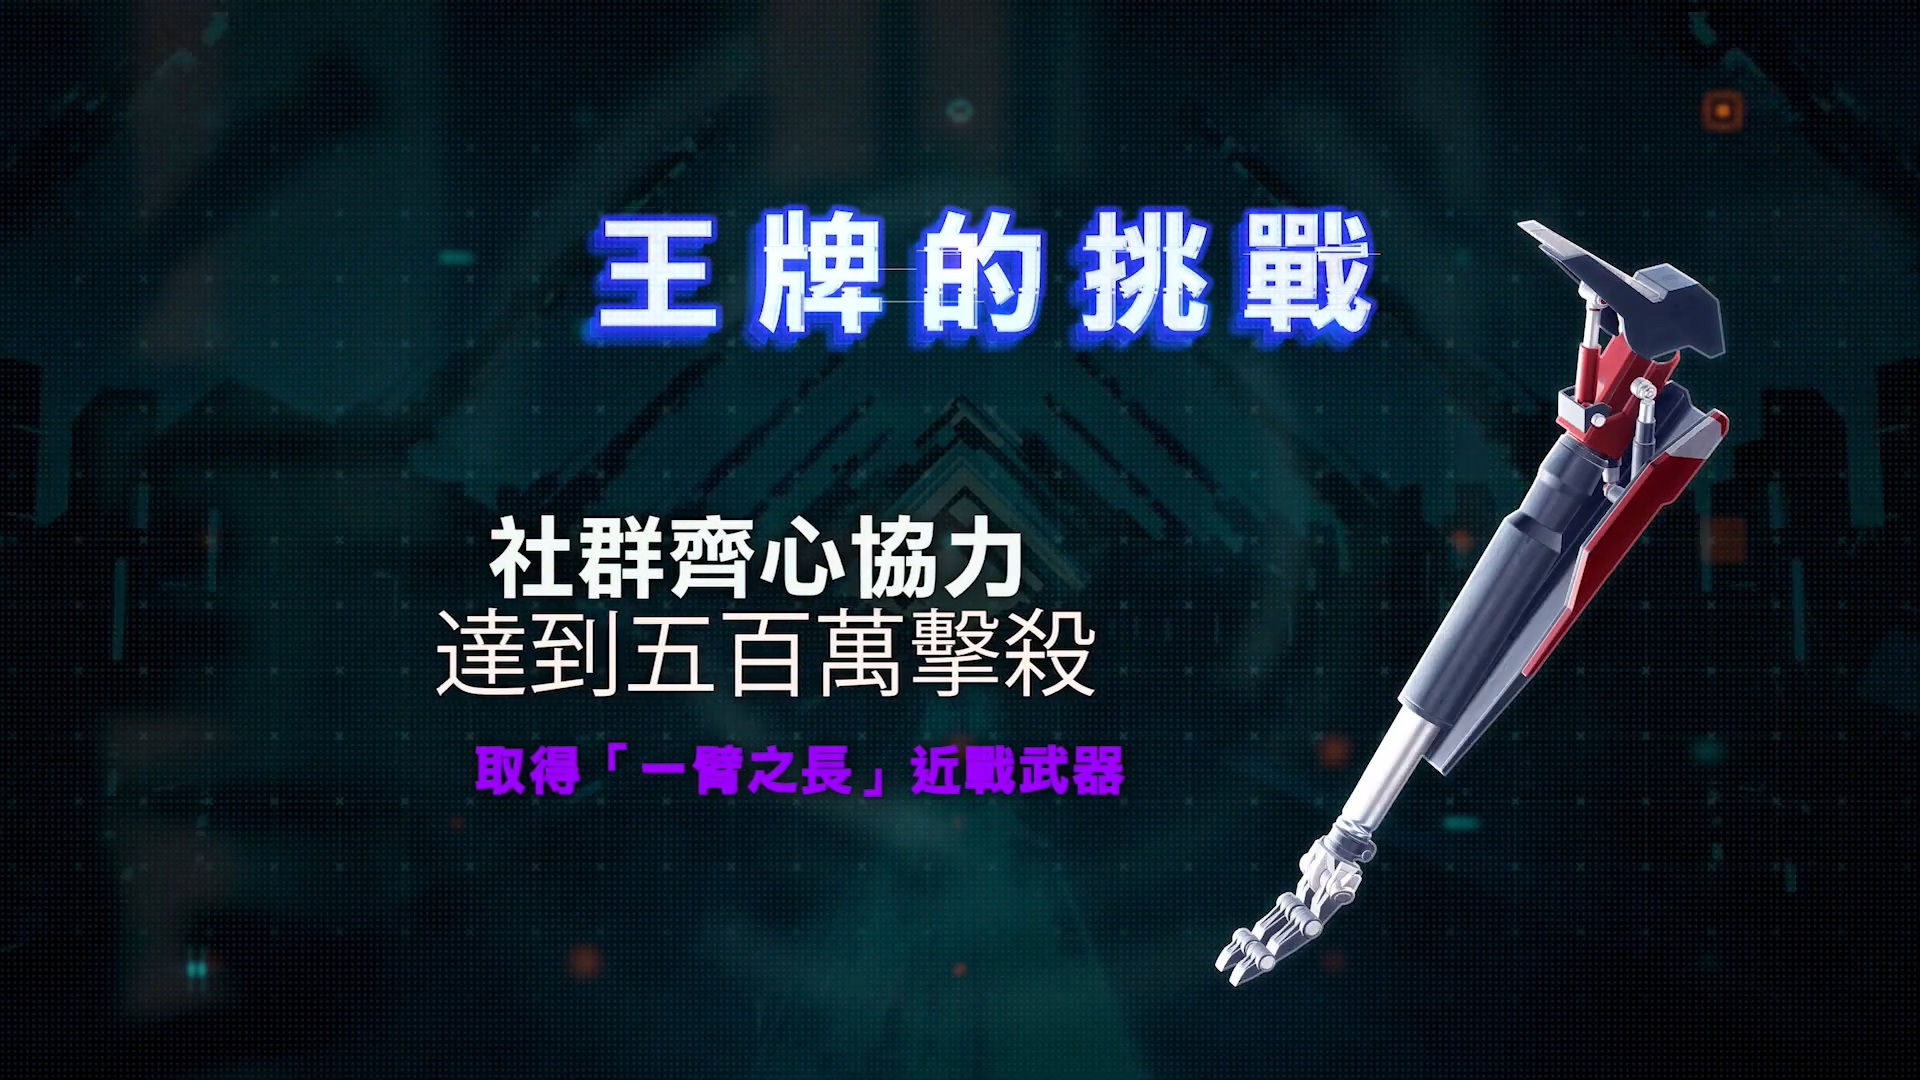 育碧《超猎都市》全新CG宣传片发布 解锁独家近战武器